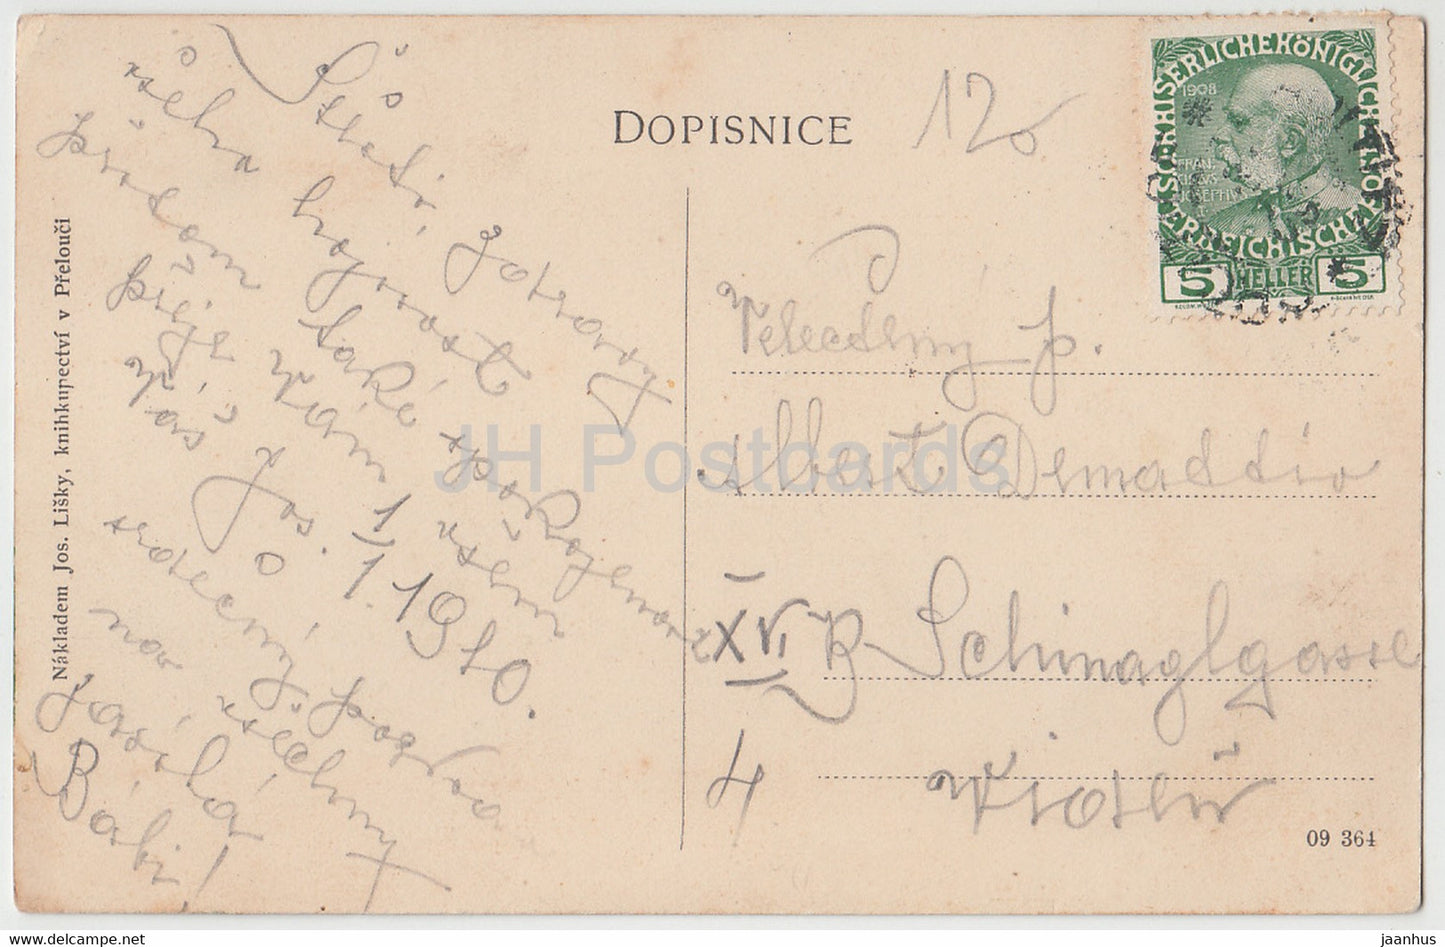 Prelouc - carte postale ancienne - 1910 - République tchèque - occasion